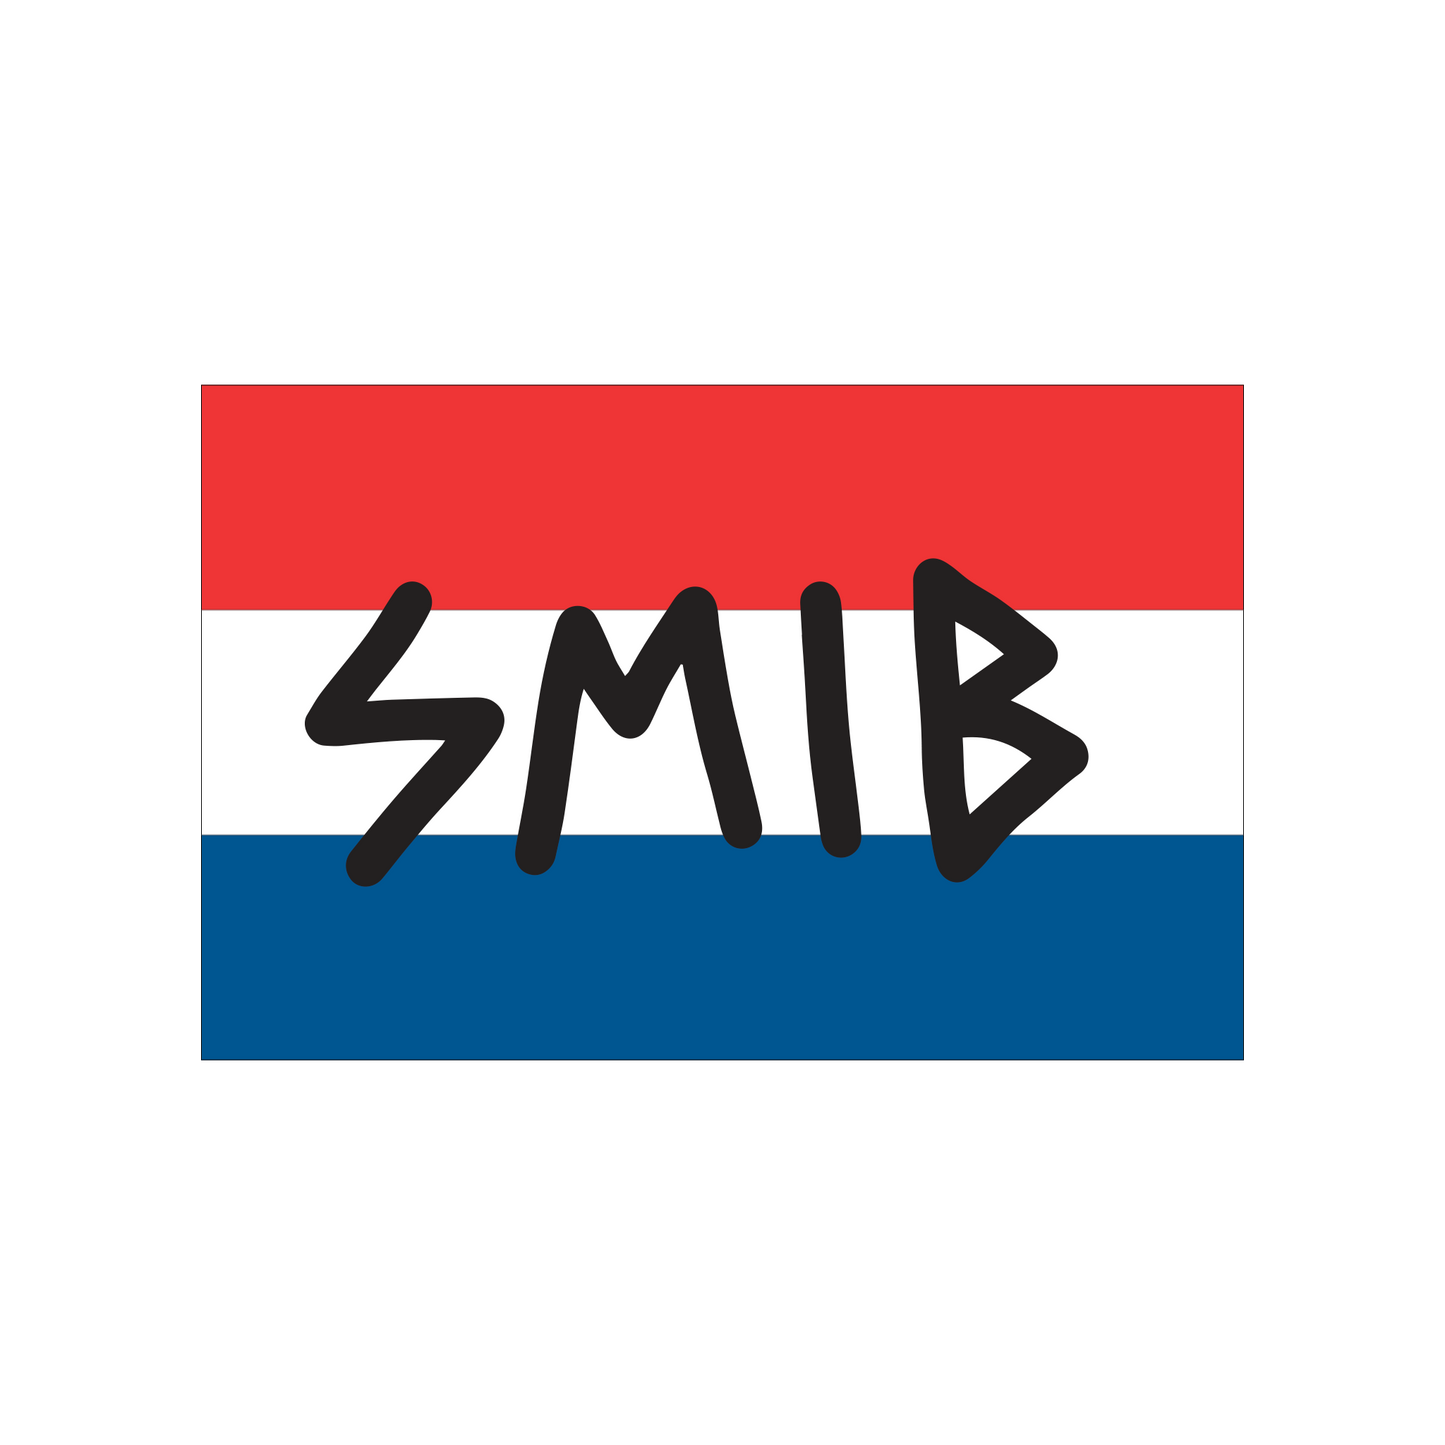 Smib NL Tag Sticker | Multicolor